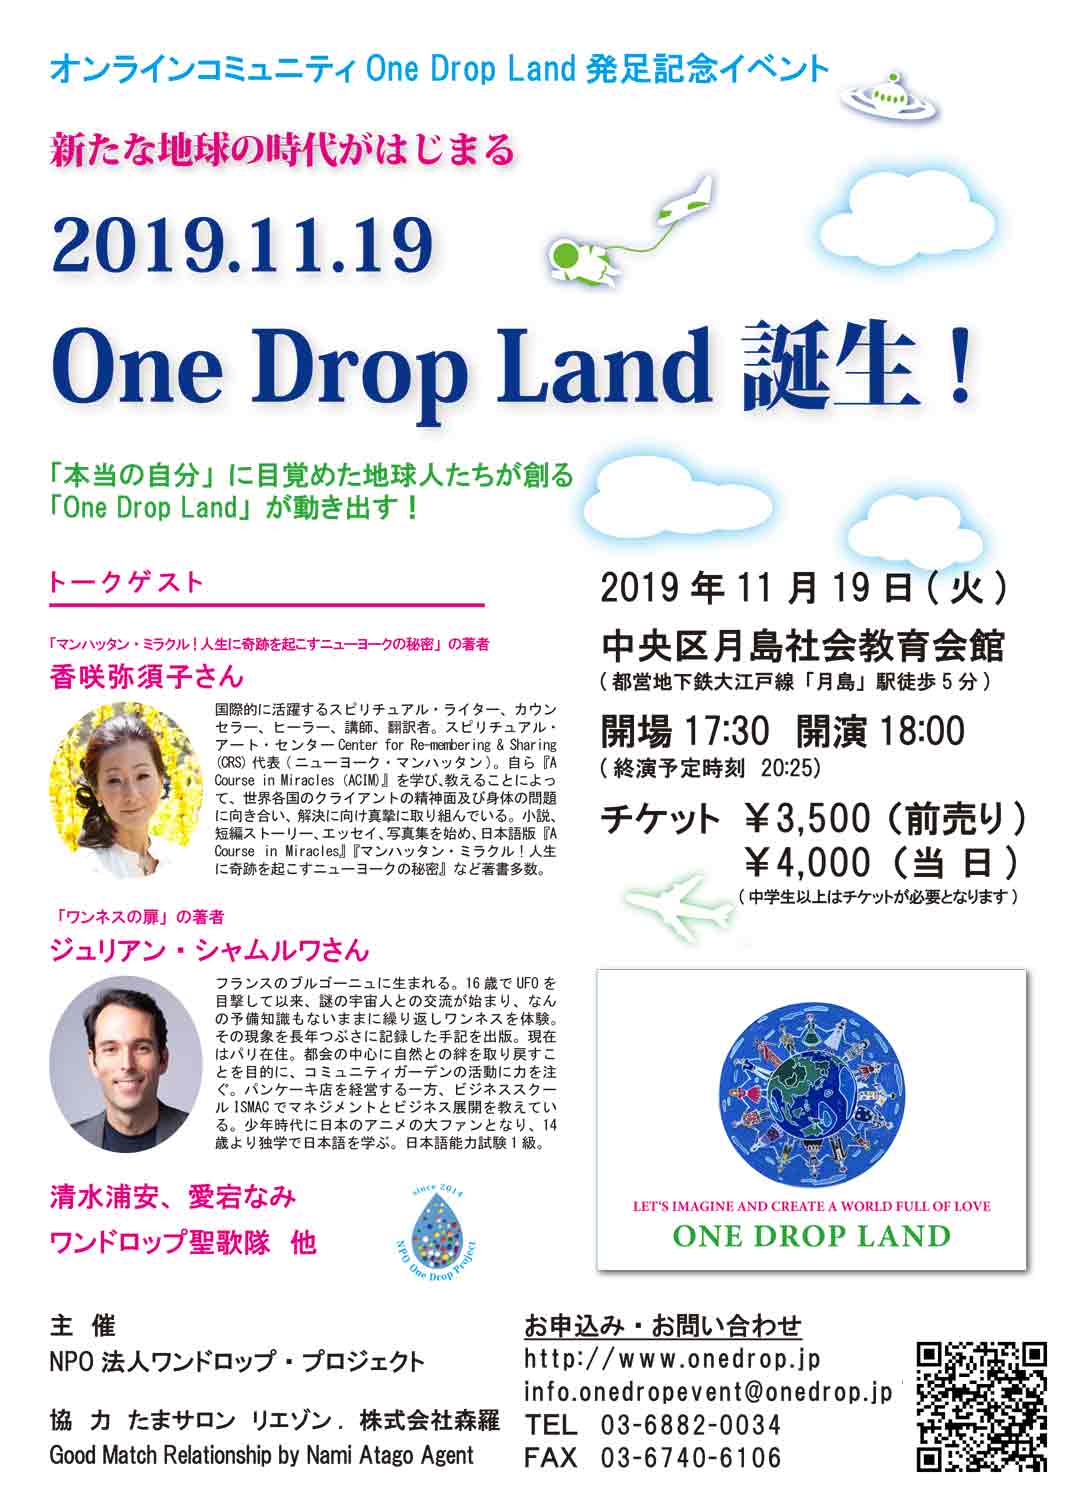 2019年11月19日(火) One Drop Land発足記念イベント